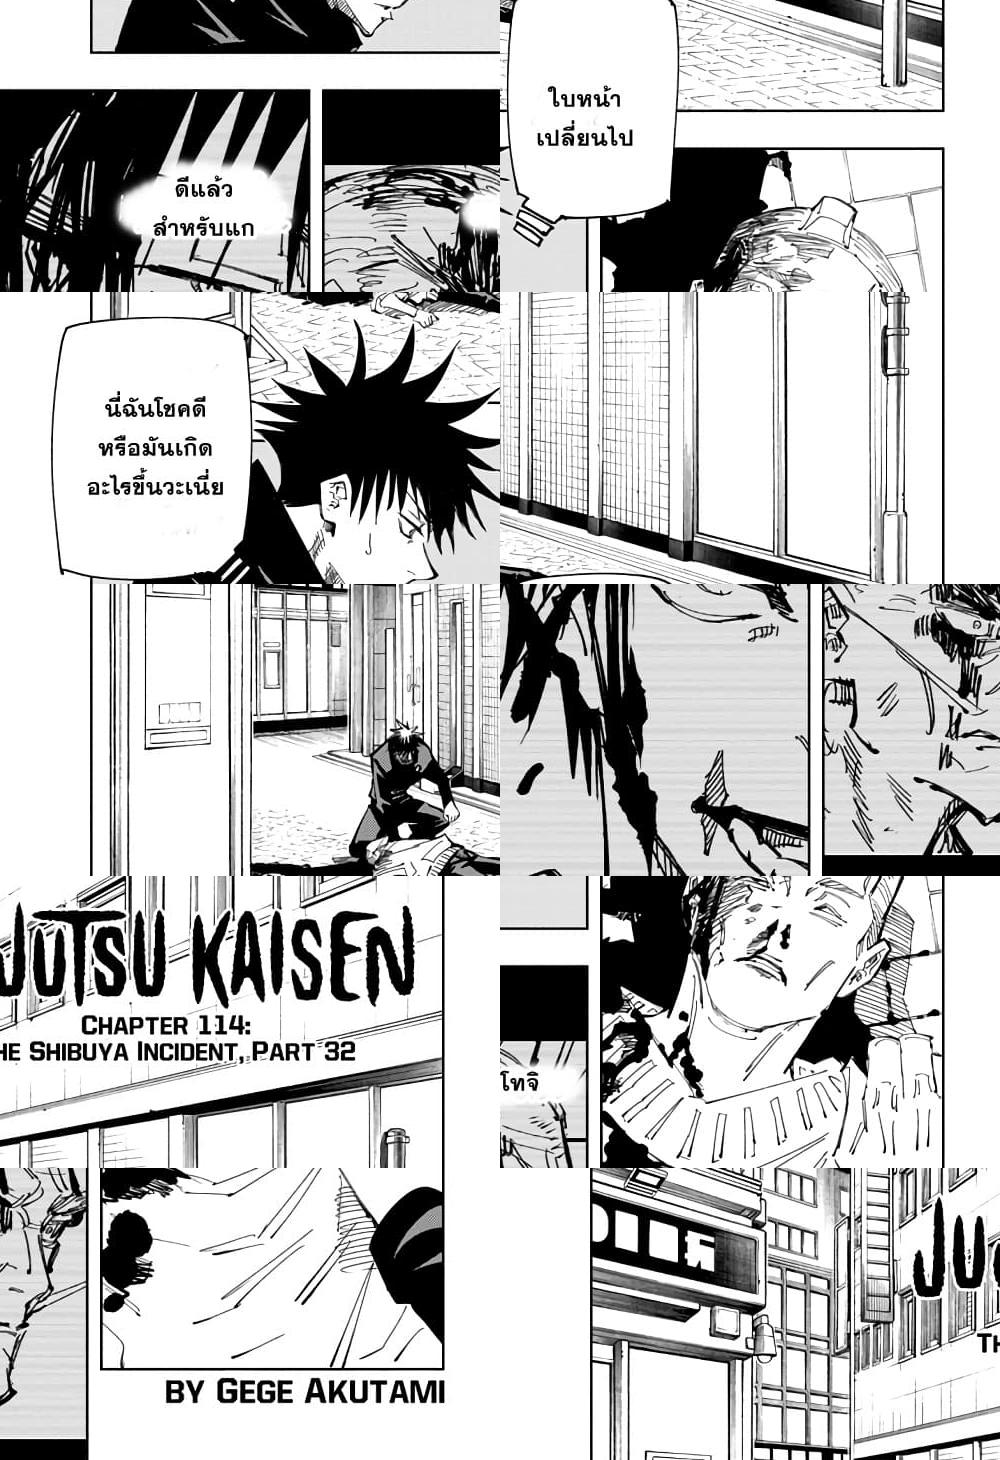 Jujutsu Kaisen มหาเวทย์ผนึกมาร - อุบัติการณ์ชิบุย่า 32 - 2